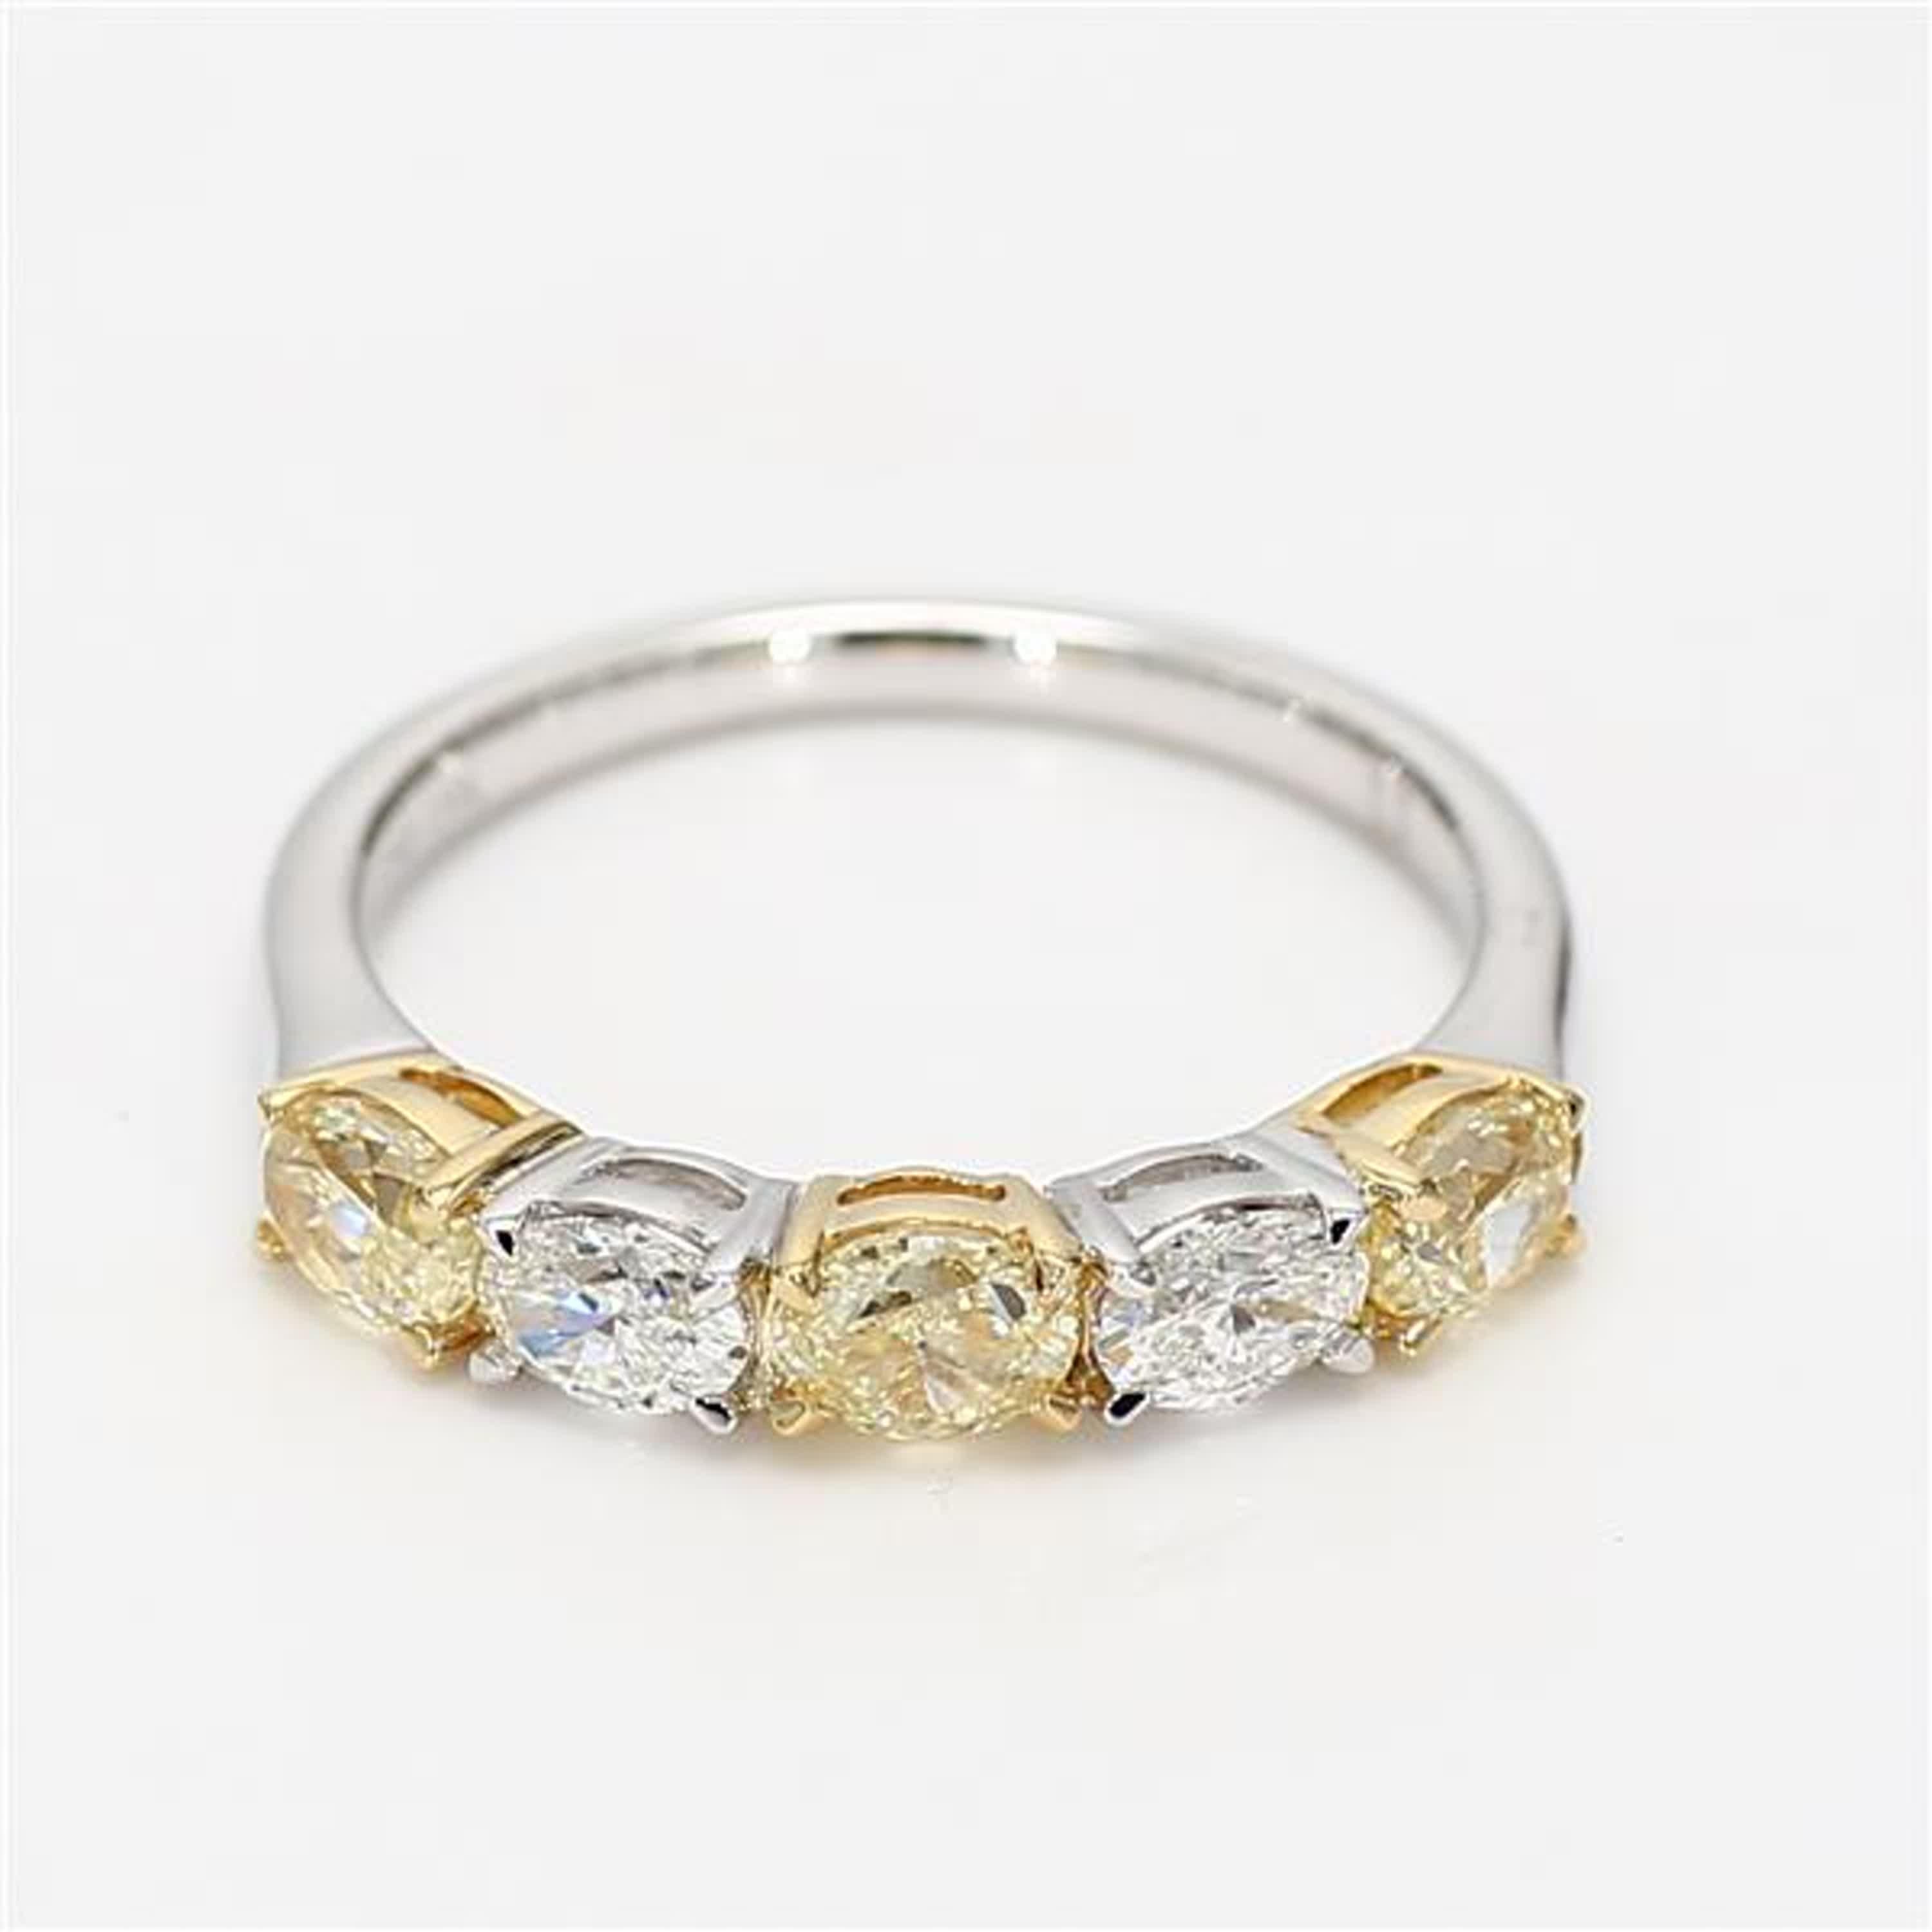 Der klassische Diamantring von RareGemWorld. Eingefasst in eine wunderschöne Fassung aus 18 Karat Gelb- und Weißgold mit natürlichen gelben Diamanten im Ovalschliff, ergänzt durch natürliche weiße Diamanten im Ovalschliff. Dieser Ring wird Sie